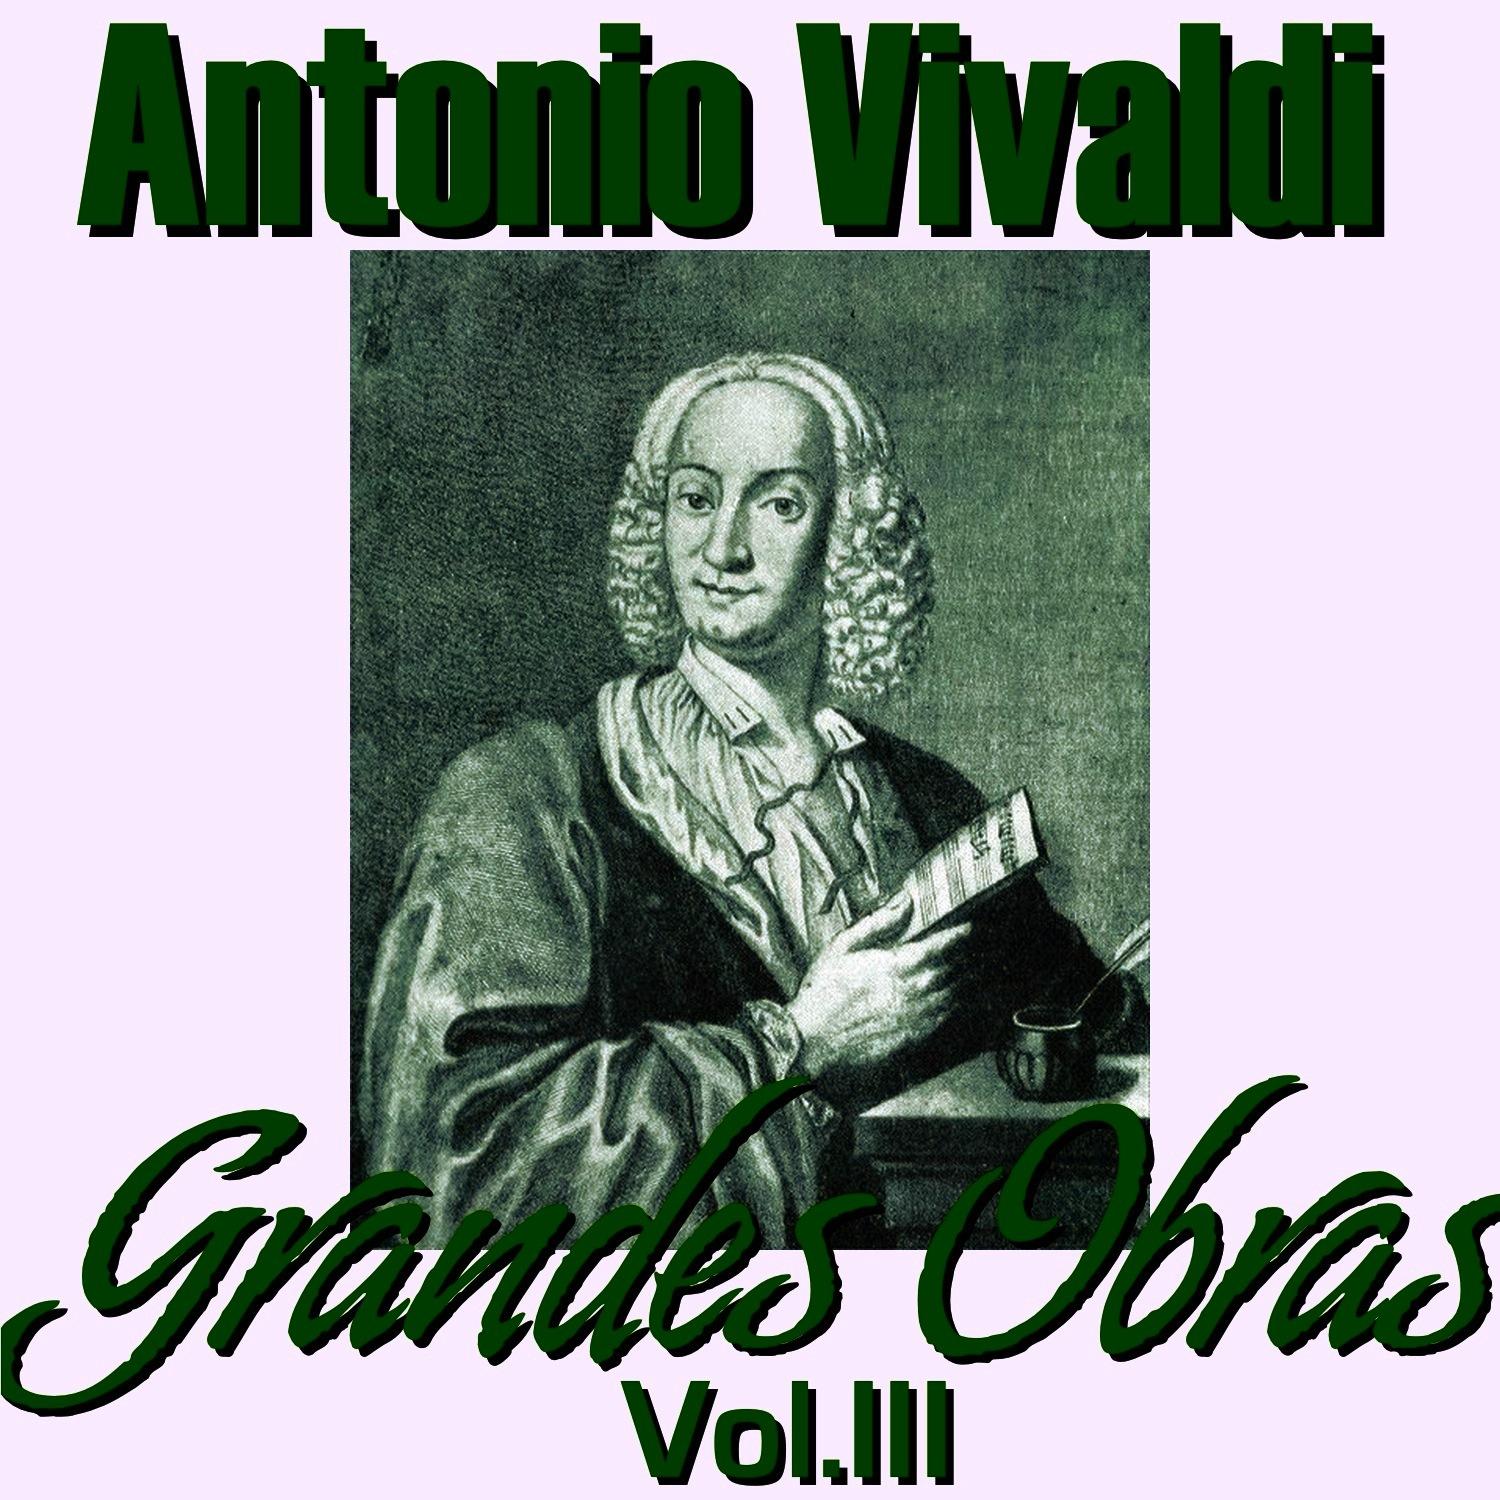 Antonio Vivaldi Grandes Obras Vol. III